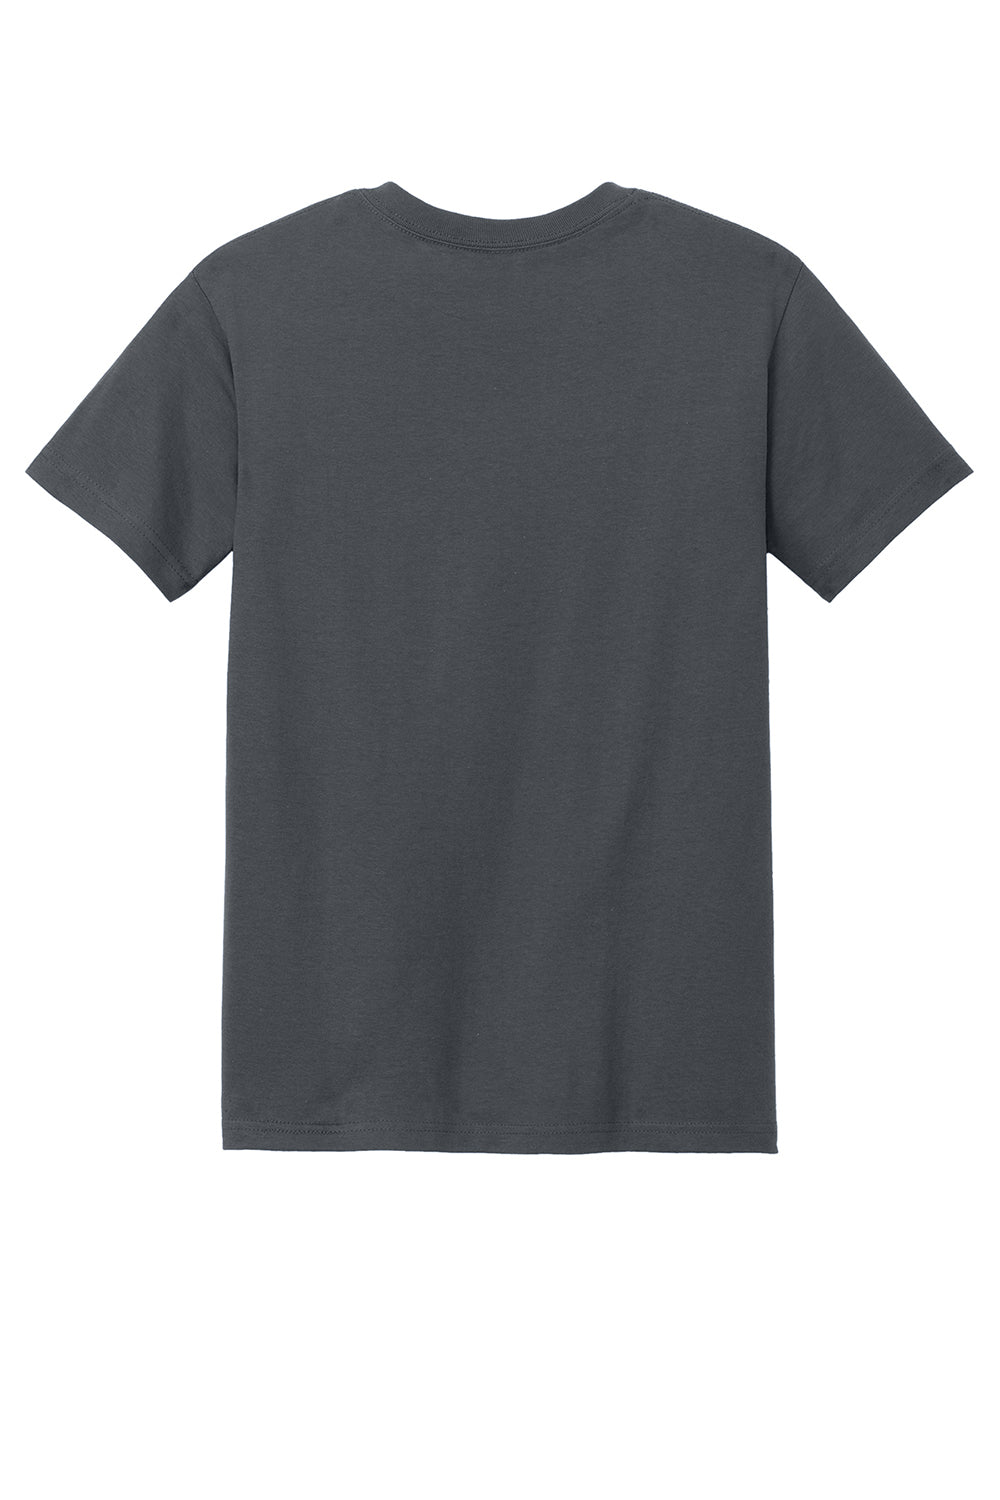 American Apparel 1301/AL1301 Mens Short Sleeve Crewneck T-Shirt Charcoal Grey Flat Back